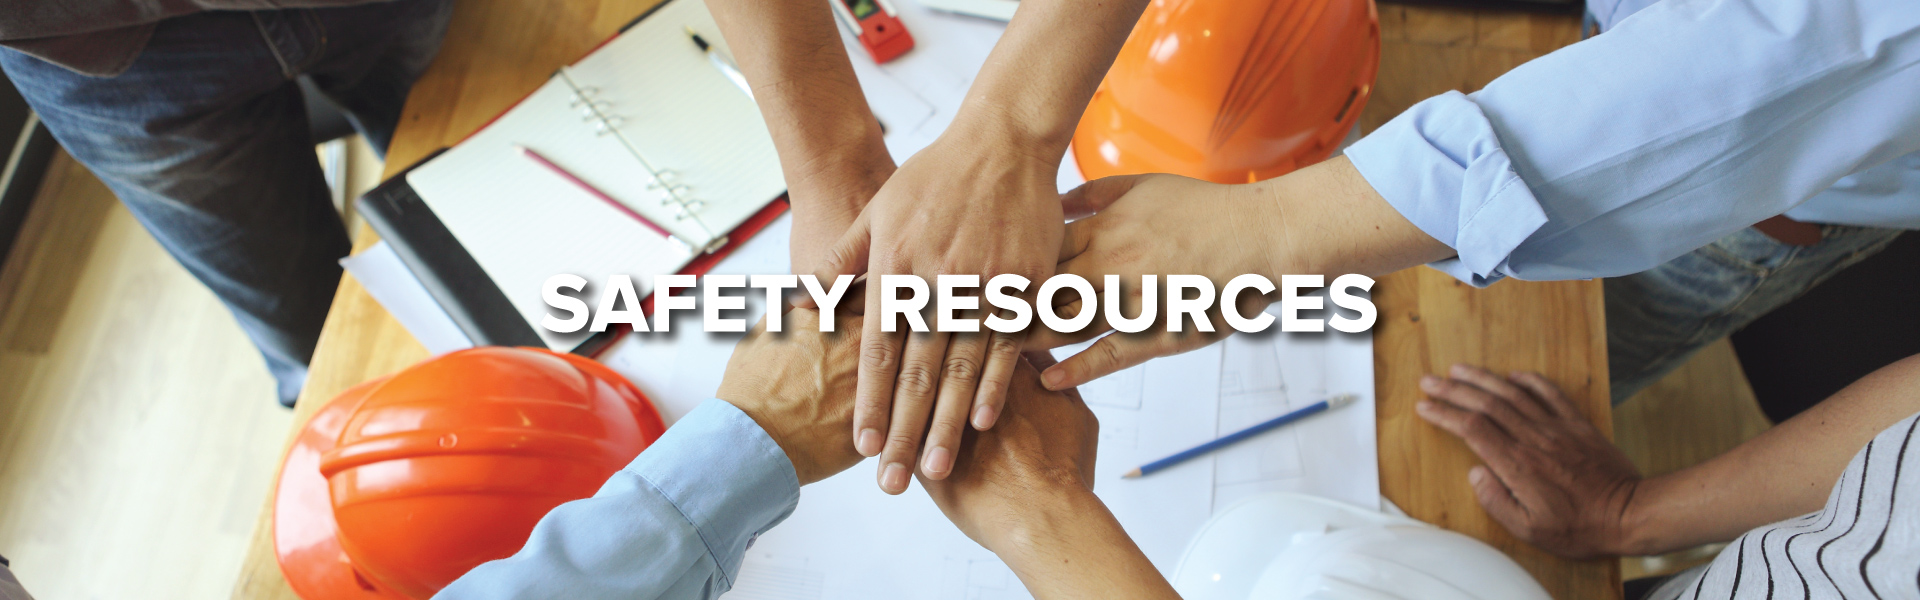 Safety-Resources-Header_1920x600